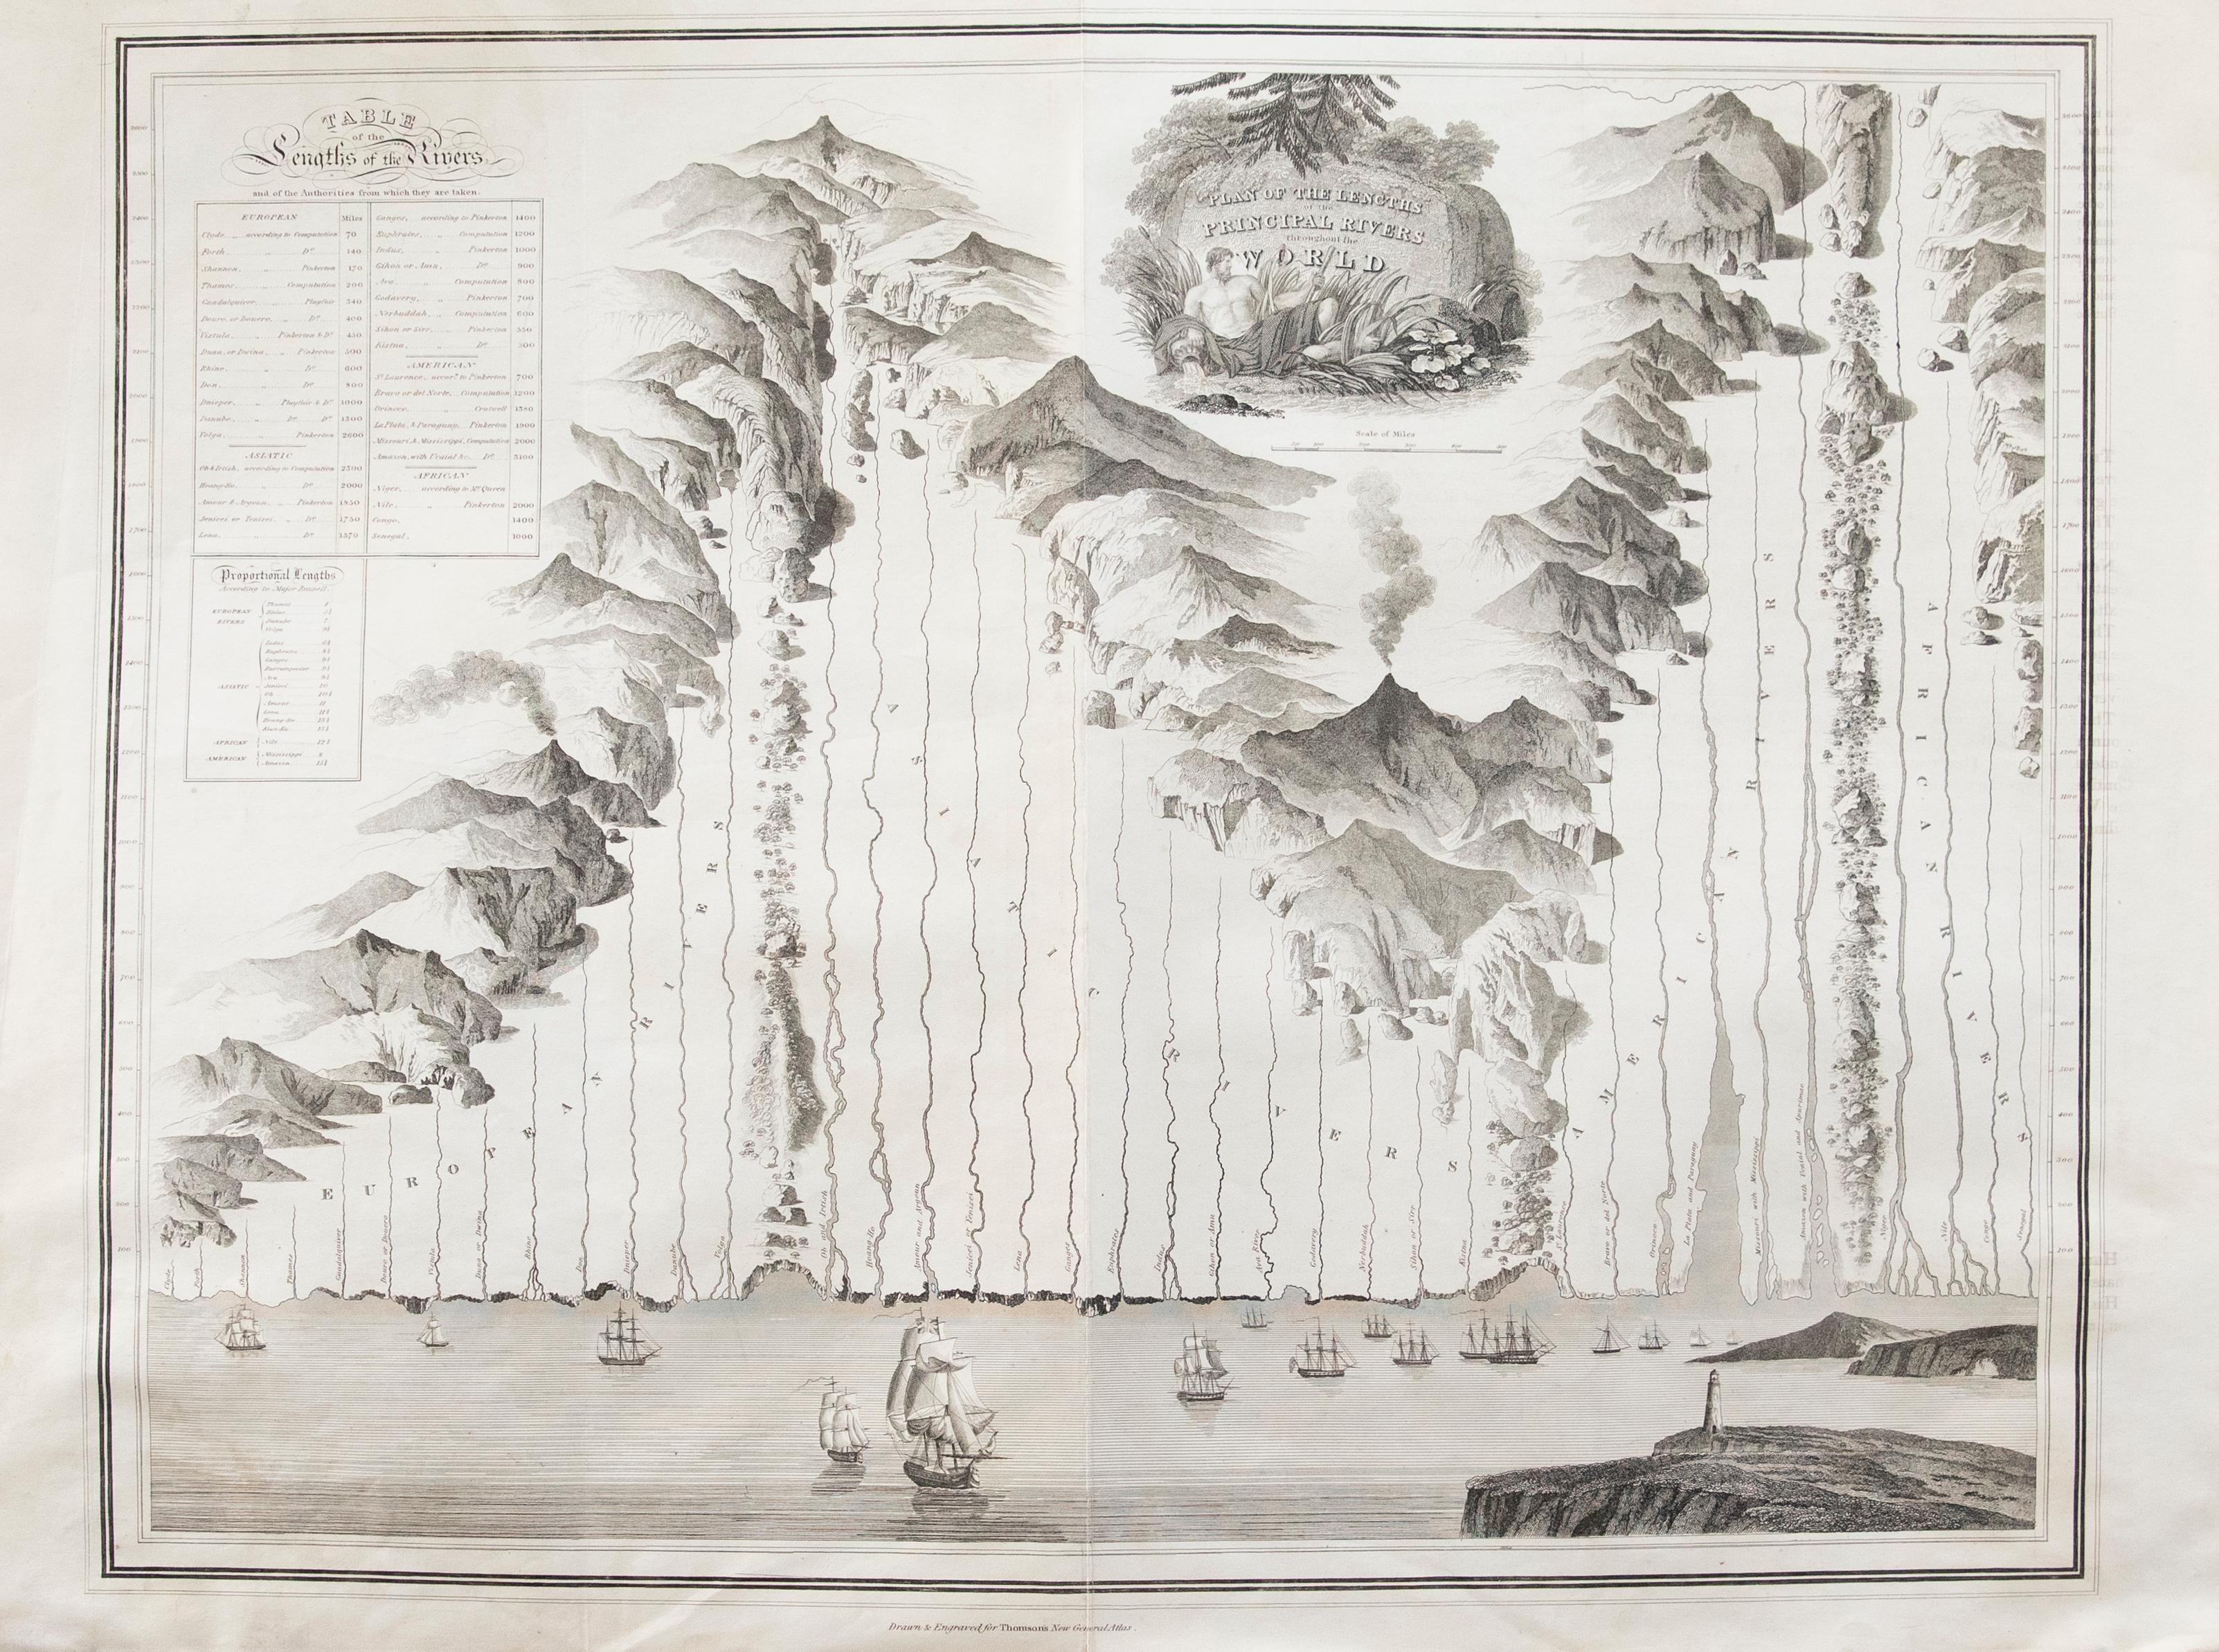 Un beau tableau gravé montrant les longueurs des principaux fleuves à travers le monde, tiré de la deuxième édition du "New General Atlas" de John Thomson, publié en 1830. Sur le papier.